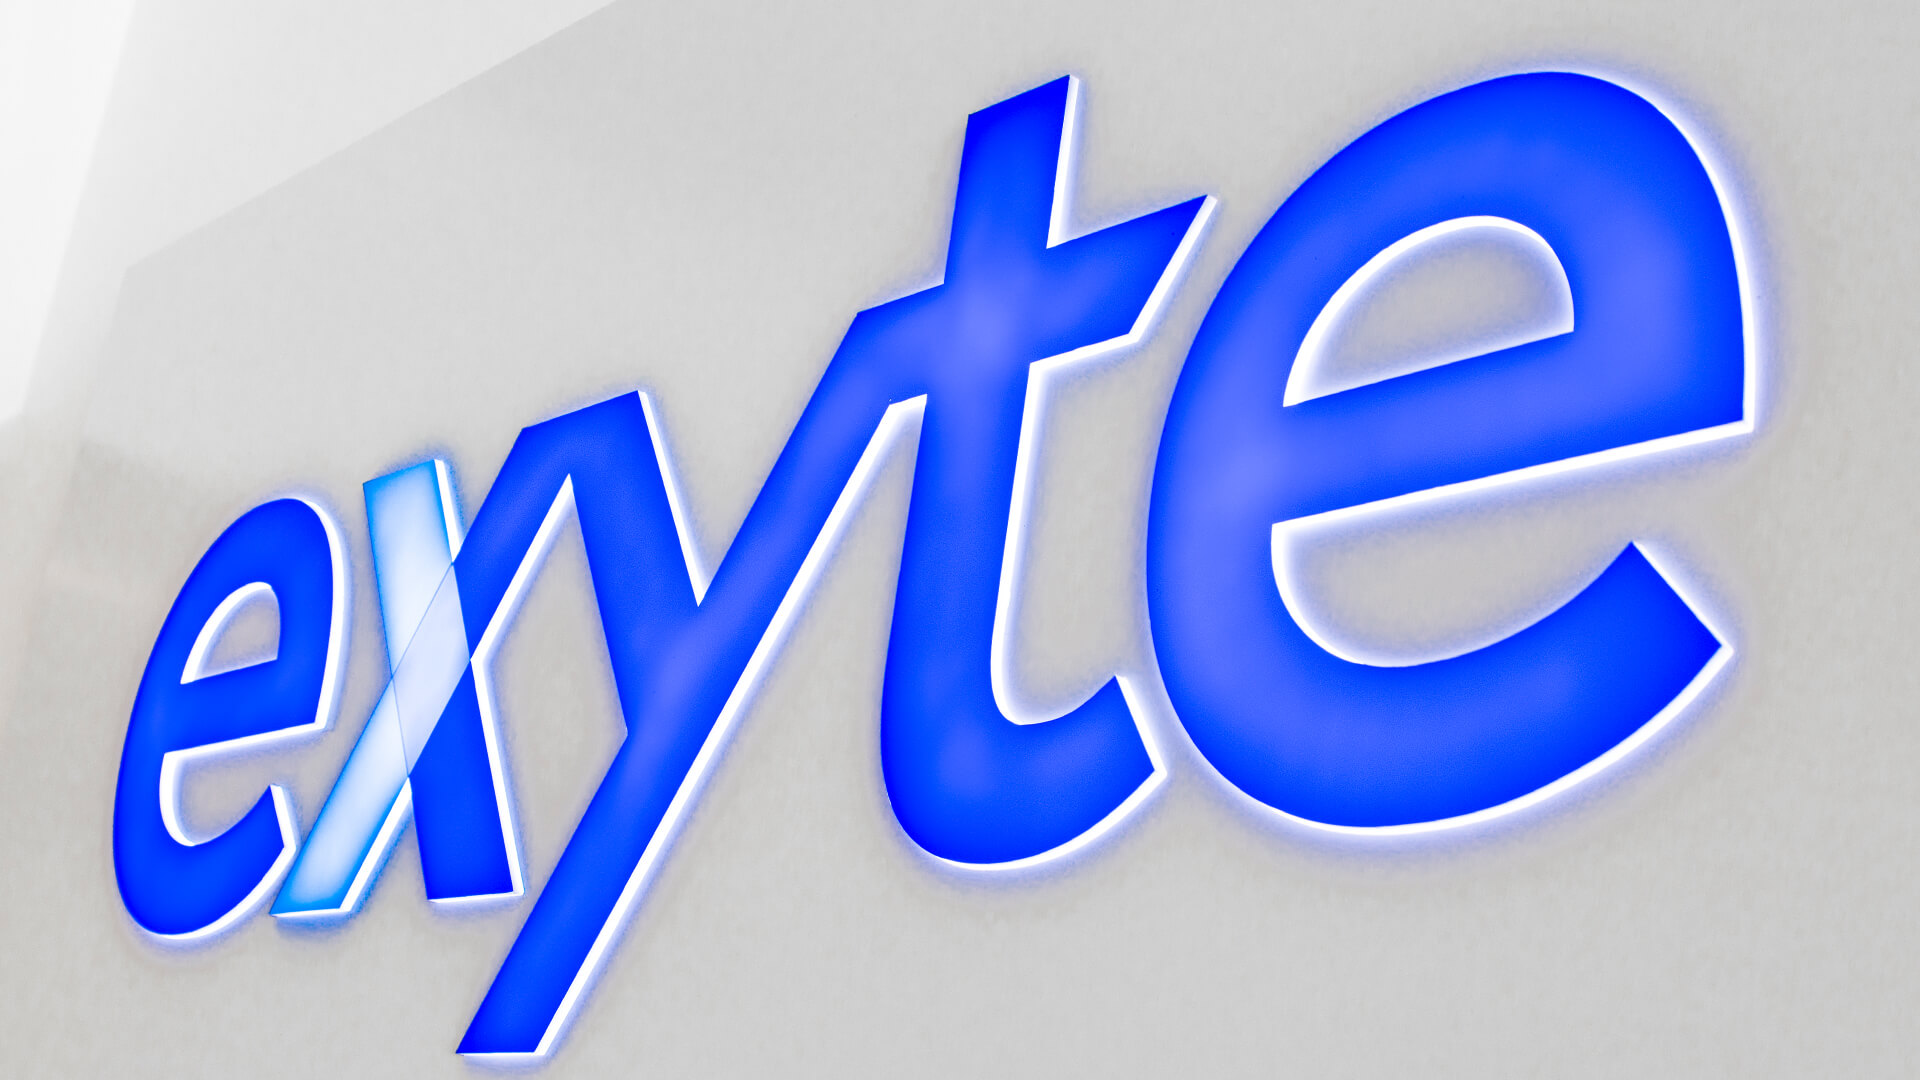 Exyte-Ausgang - exyte-kassentafel-an-der-wand-innen-des-büros-hinter-der-rezeption-blaues-logo-hintergrundbeleuchtete-kassentafel-für-bestellungen-gdansk-park-technologisch-wissenschaftlich